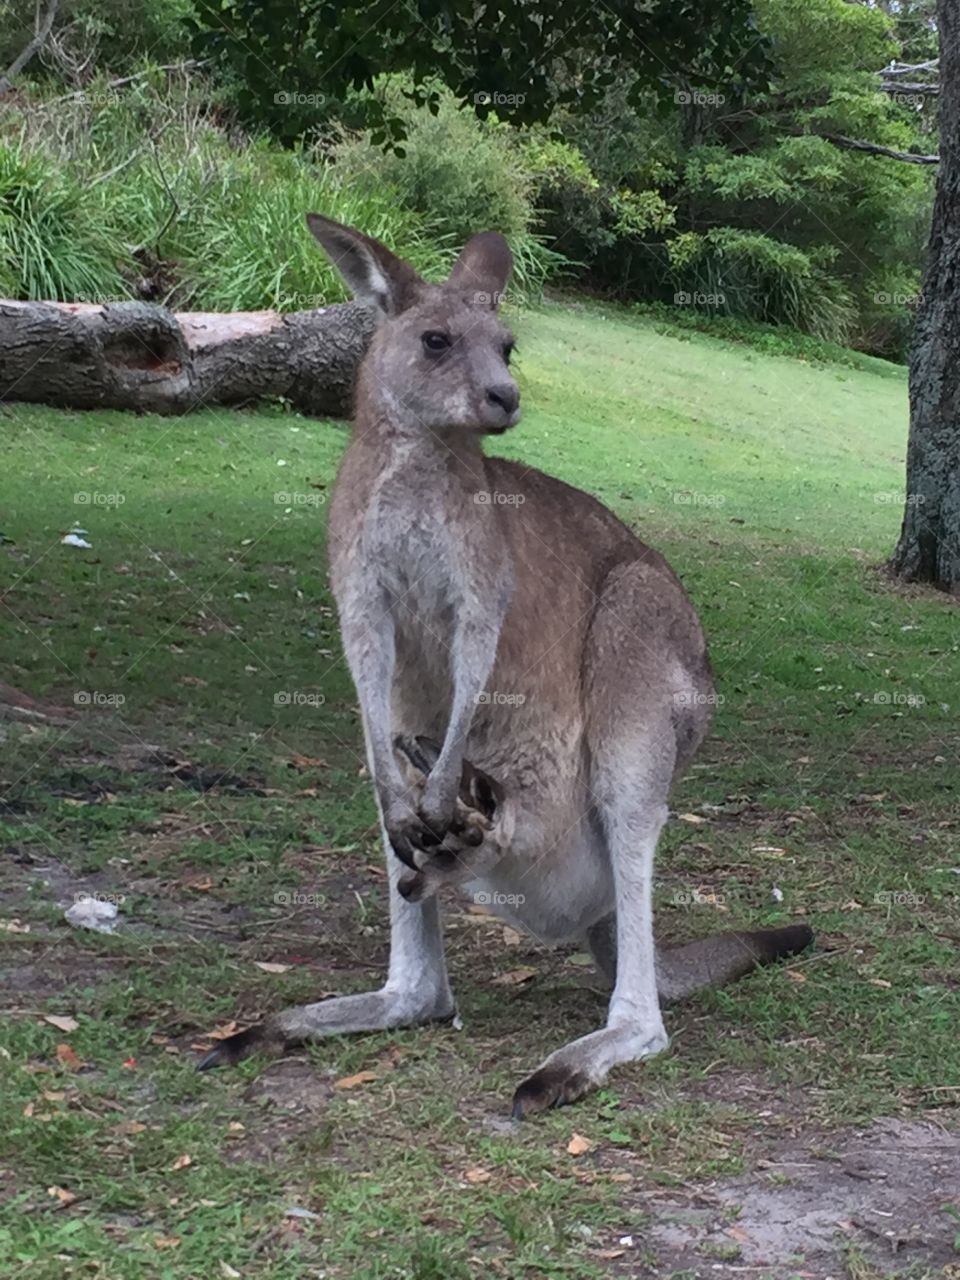 Baby kangaroo with mum 